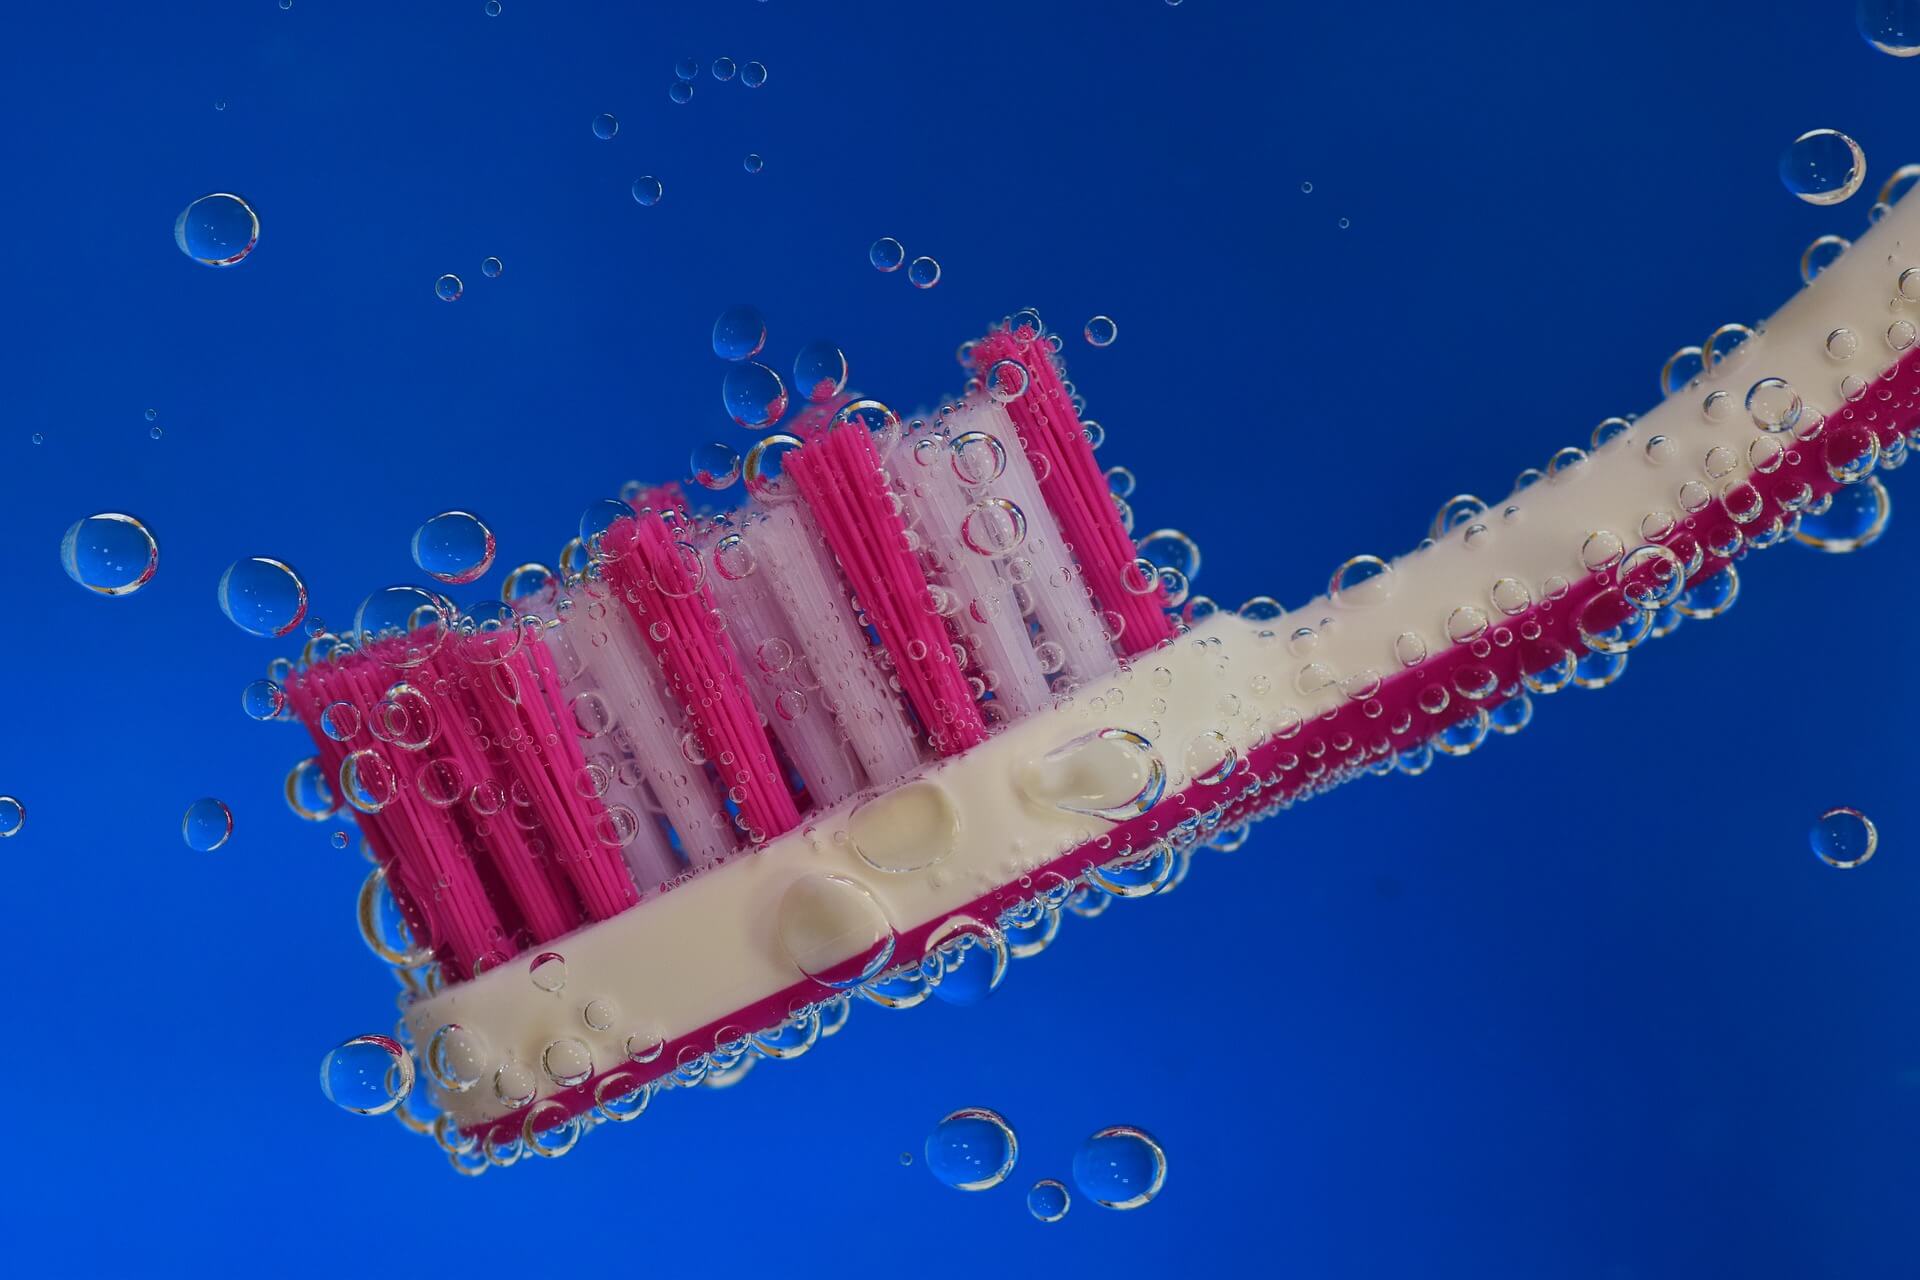 Zahnbürste, Interdentalbürstchen, Zahnseide und Mundspülungen gehören zur täglichen Zahnpflege.